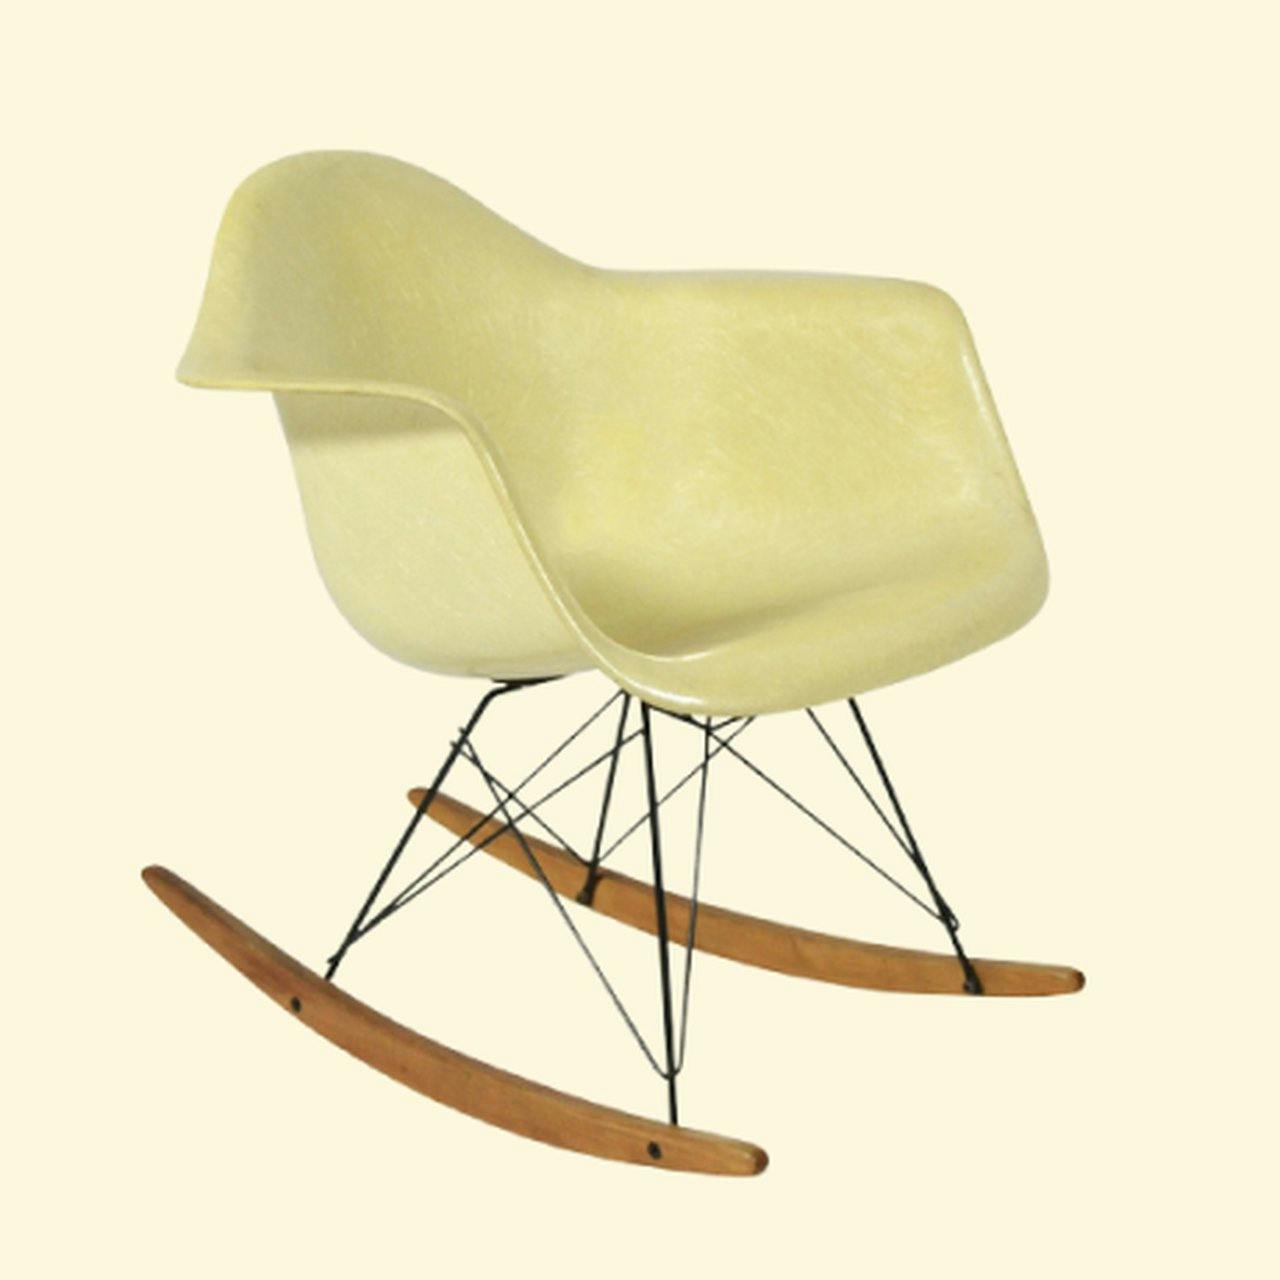 Bauhaus Rocking chairs